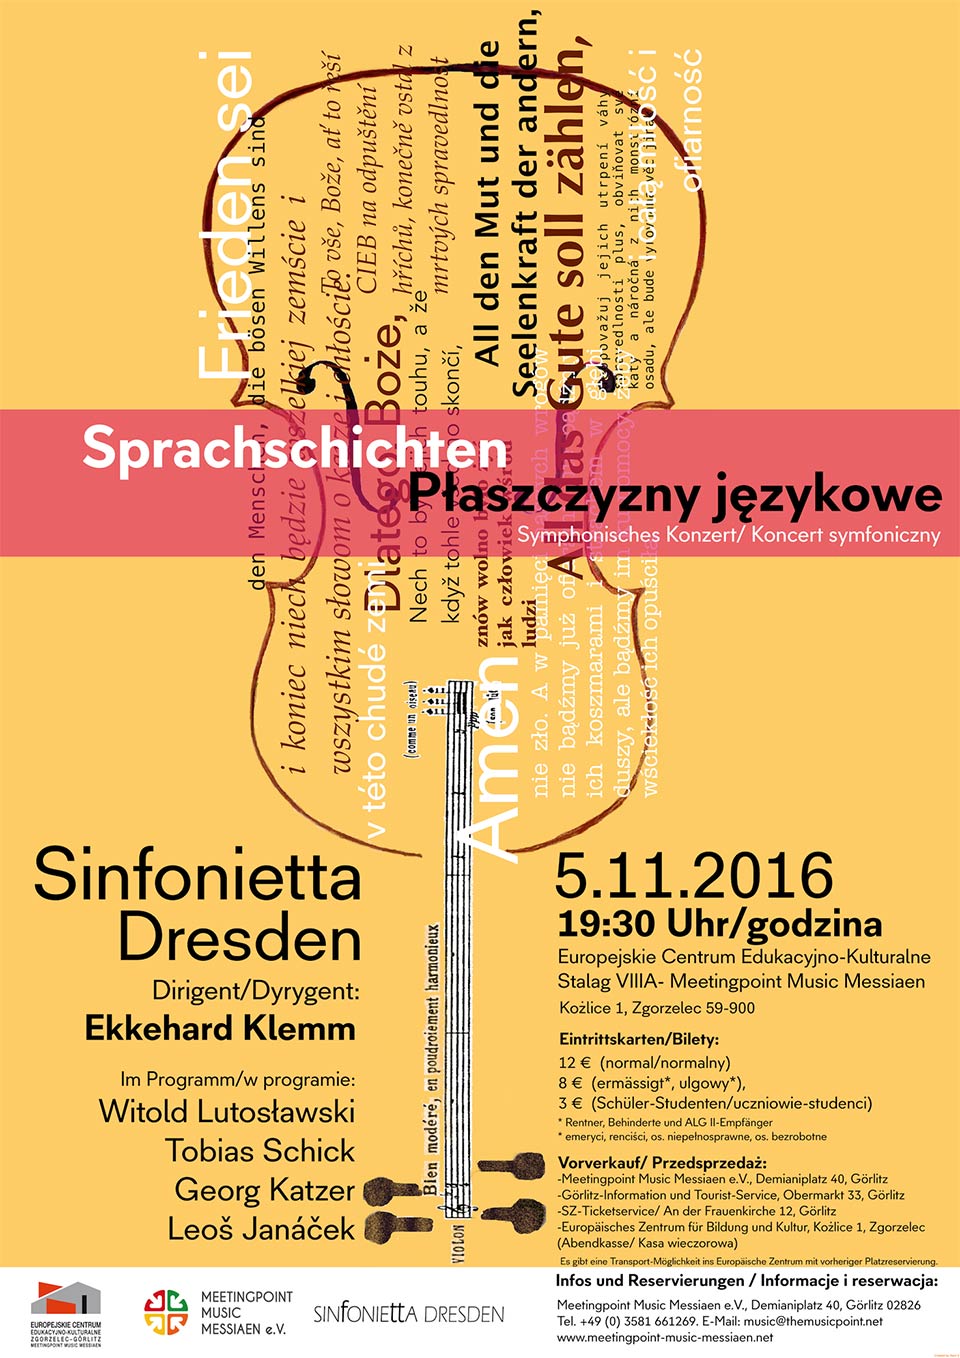 Sprachschichten Sinfonietta Dresden